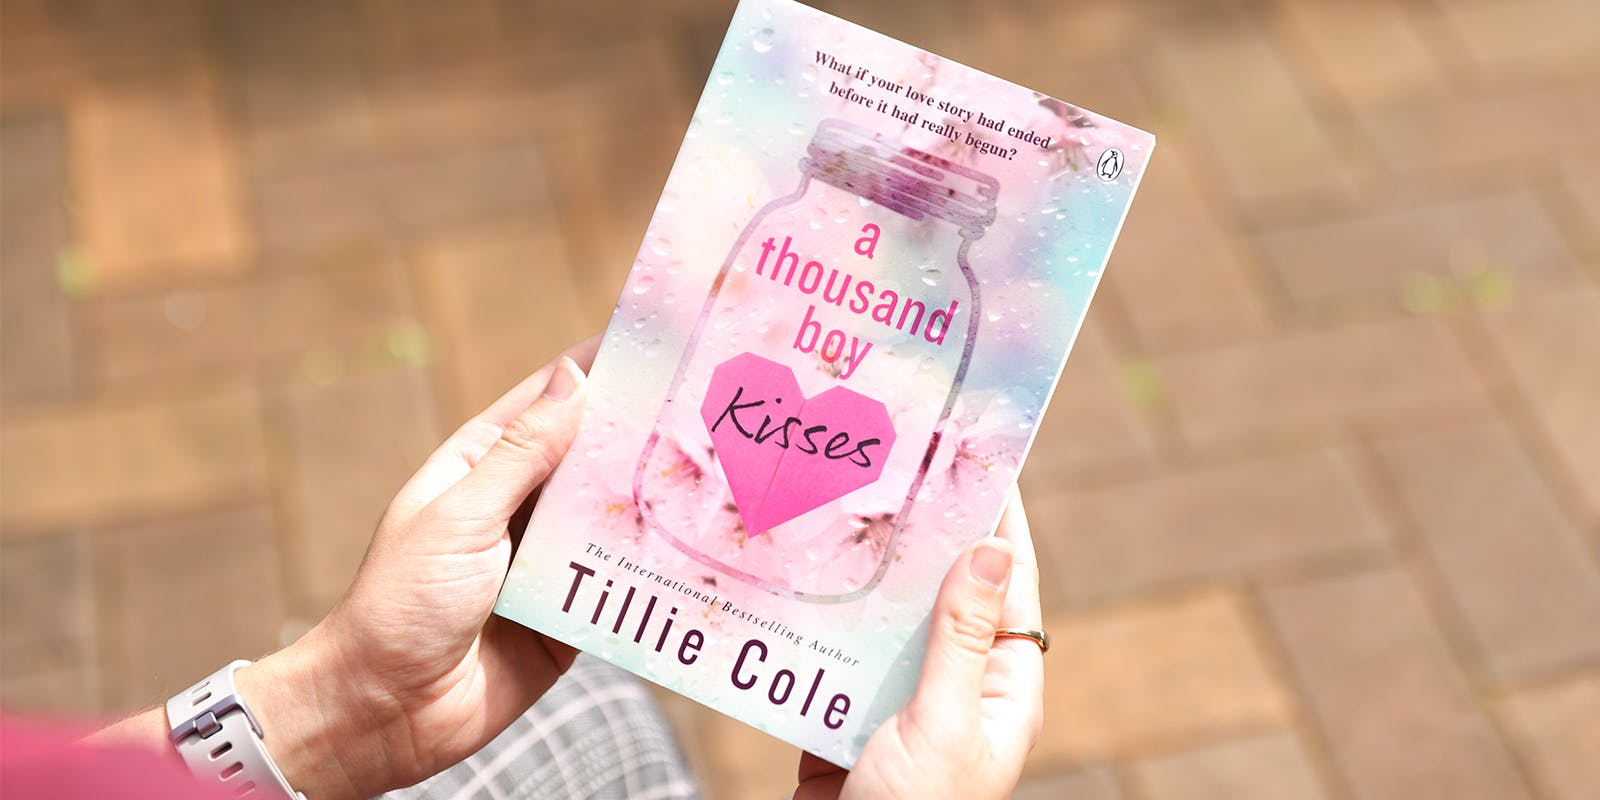 A thousand fanatic reviews for Tillie Cole